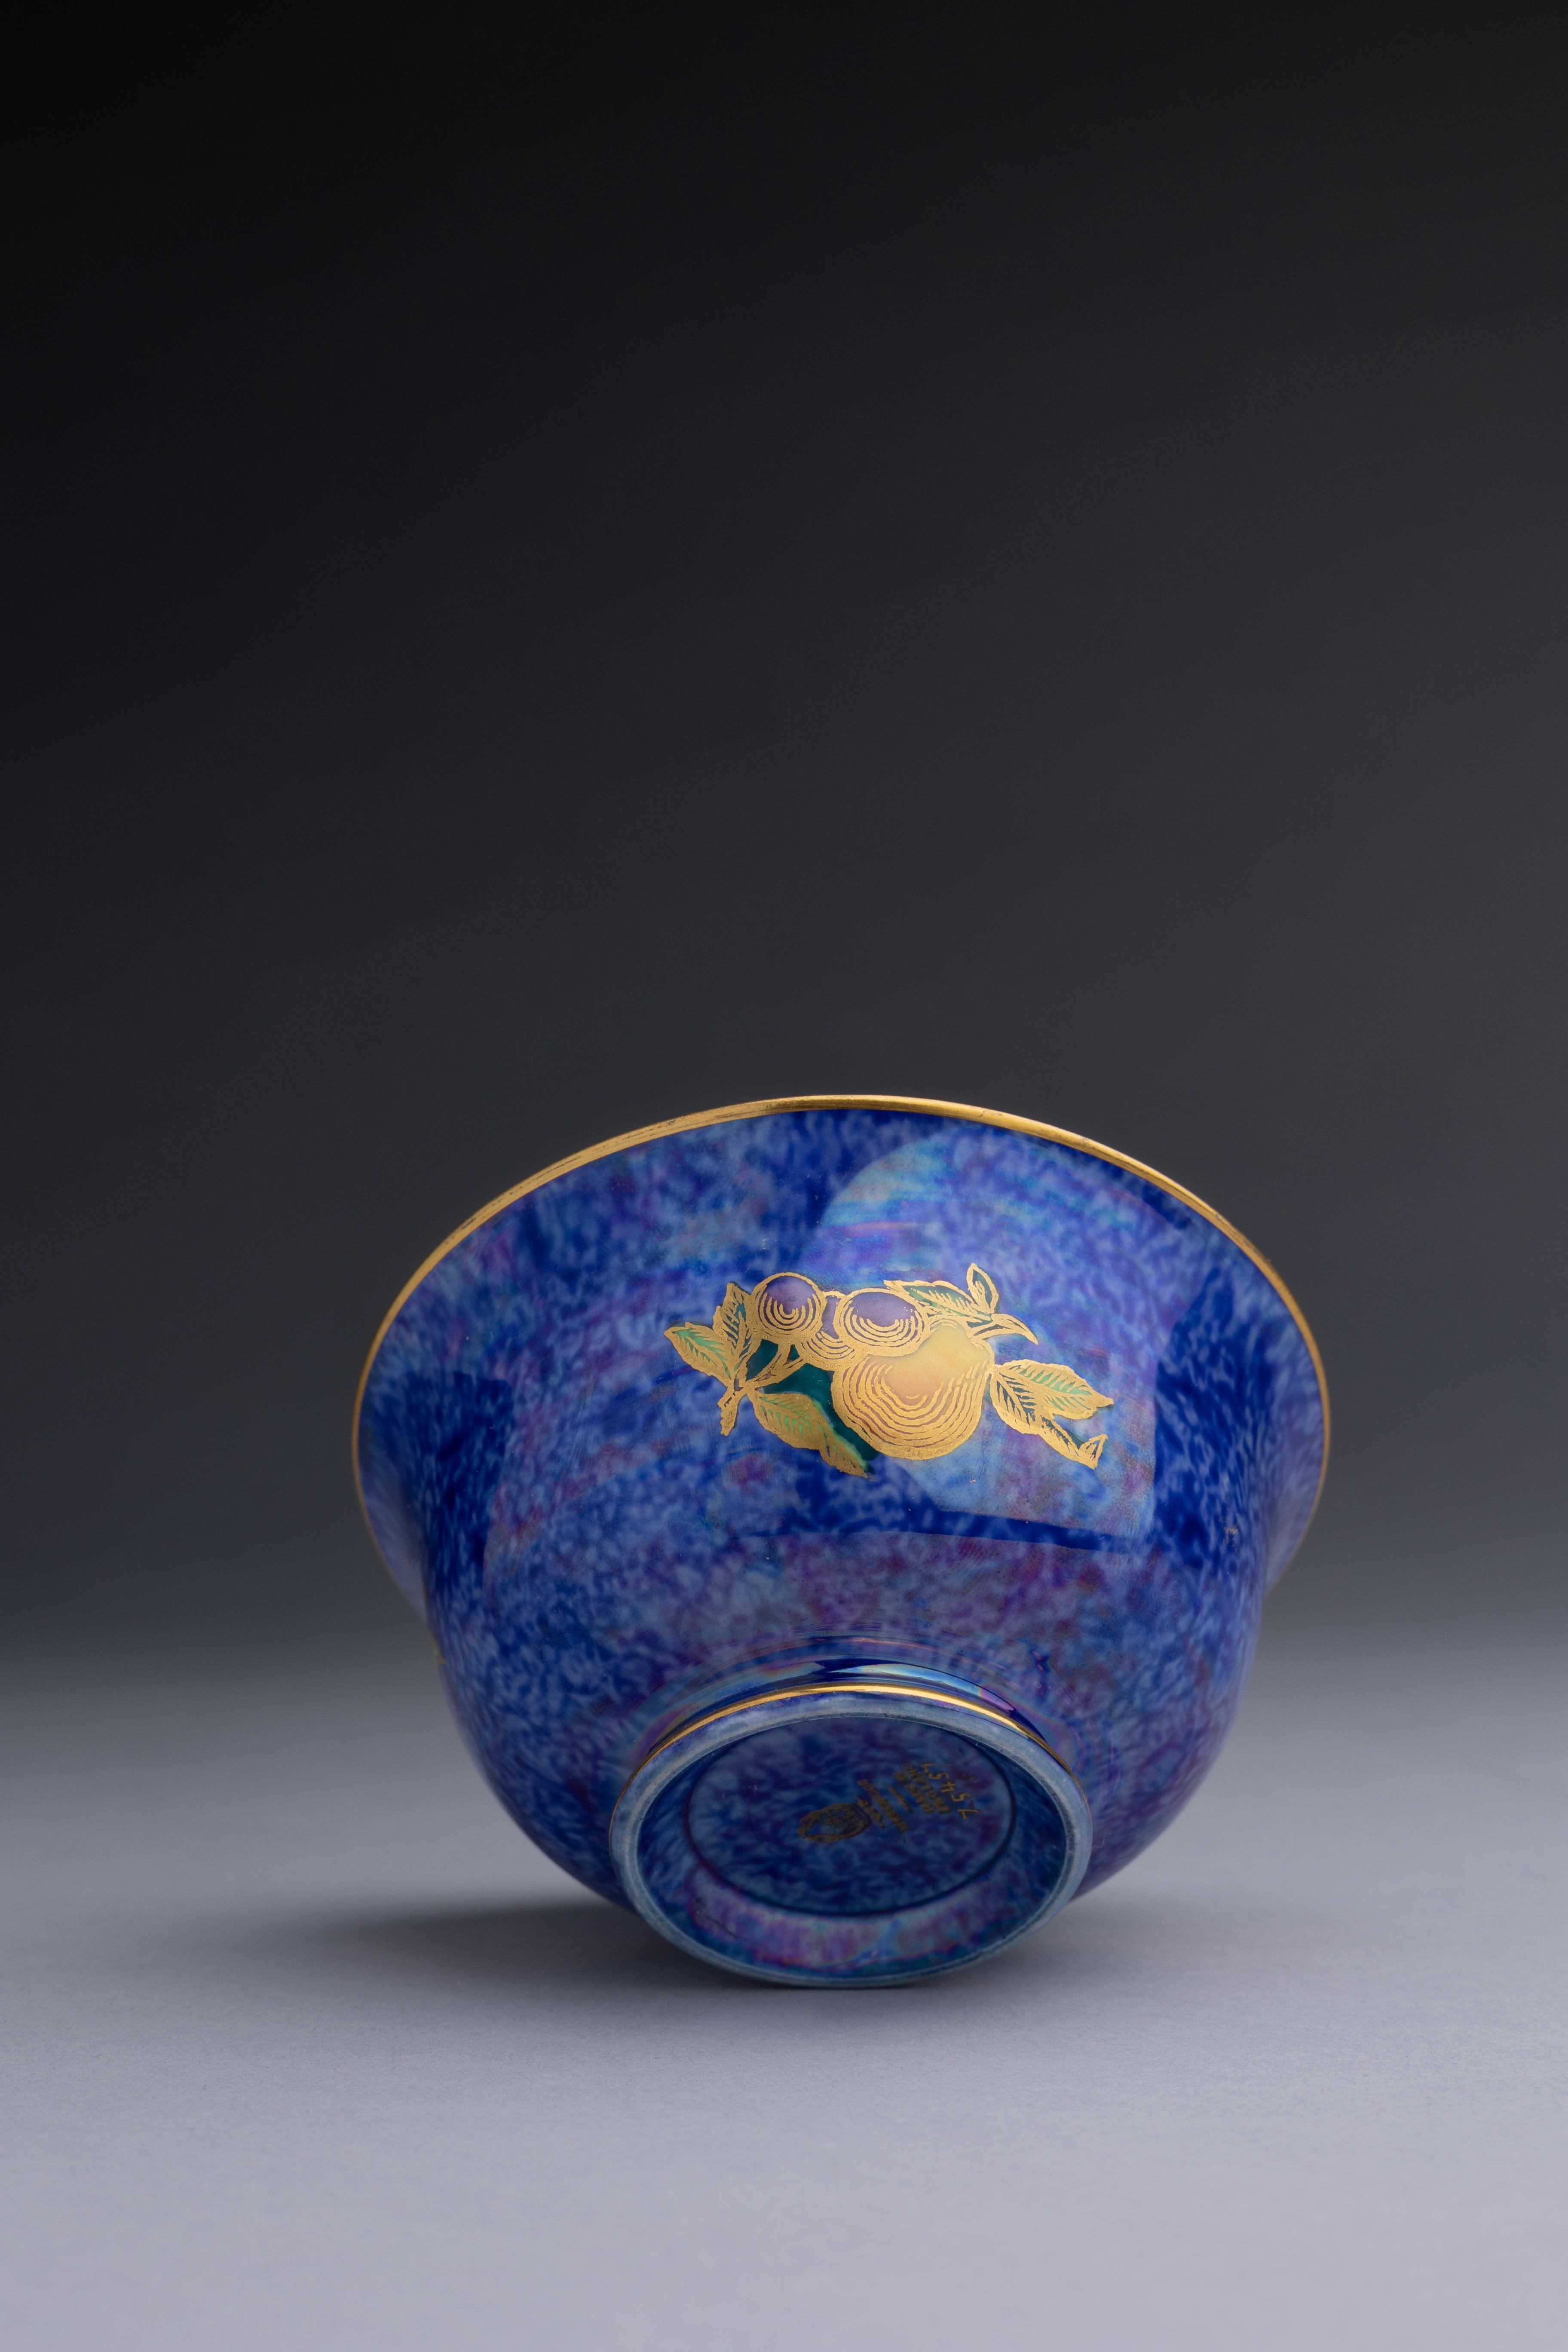 Glazed Daisy Makeig-Jones Wedgwood Blue Fruit Lustre Bowl